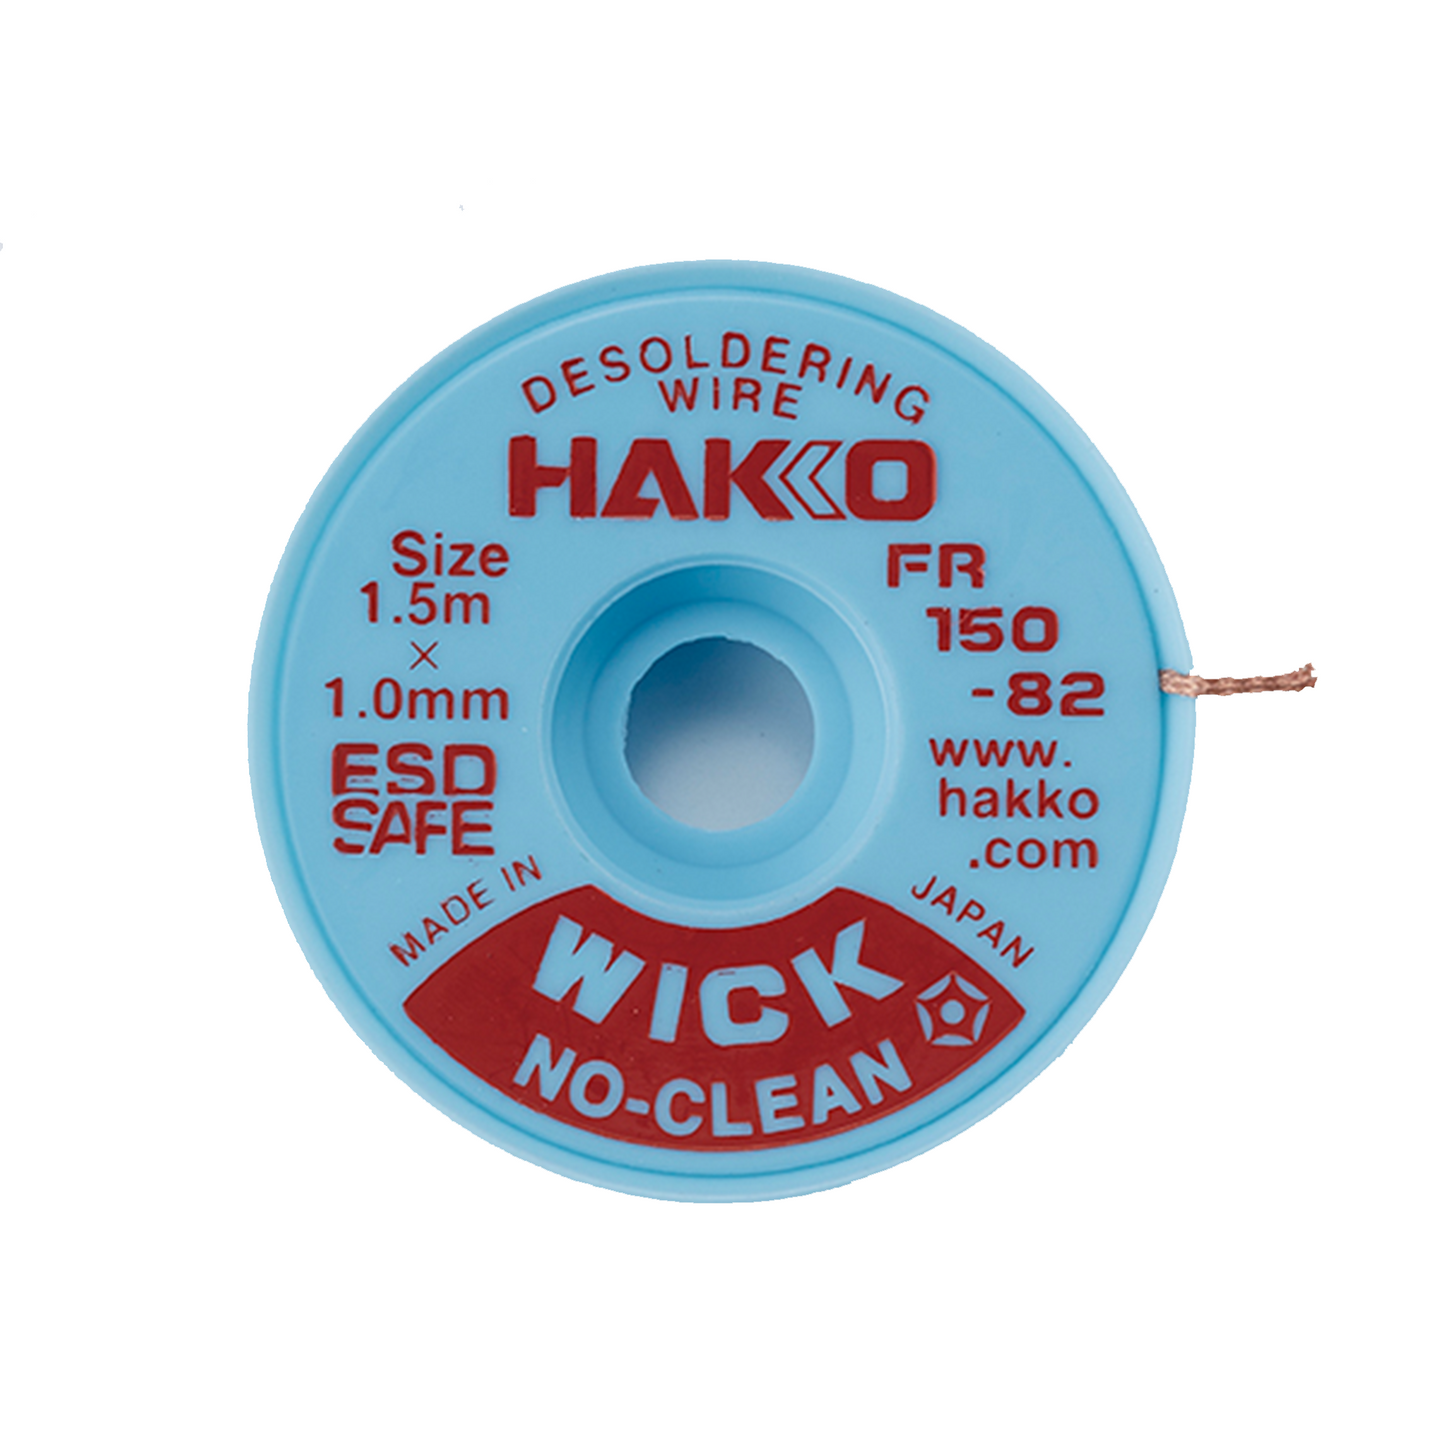 Hakko_ FR150-82 No Clean Wick Desoldering Wire (1.5m x 1.0mm)_ Desoldering Wick_ Hakko Products